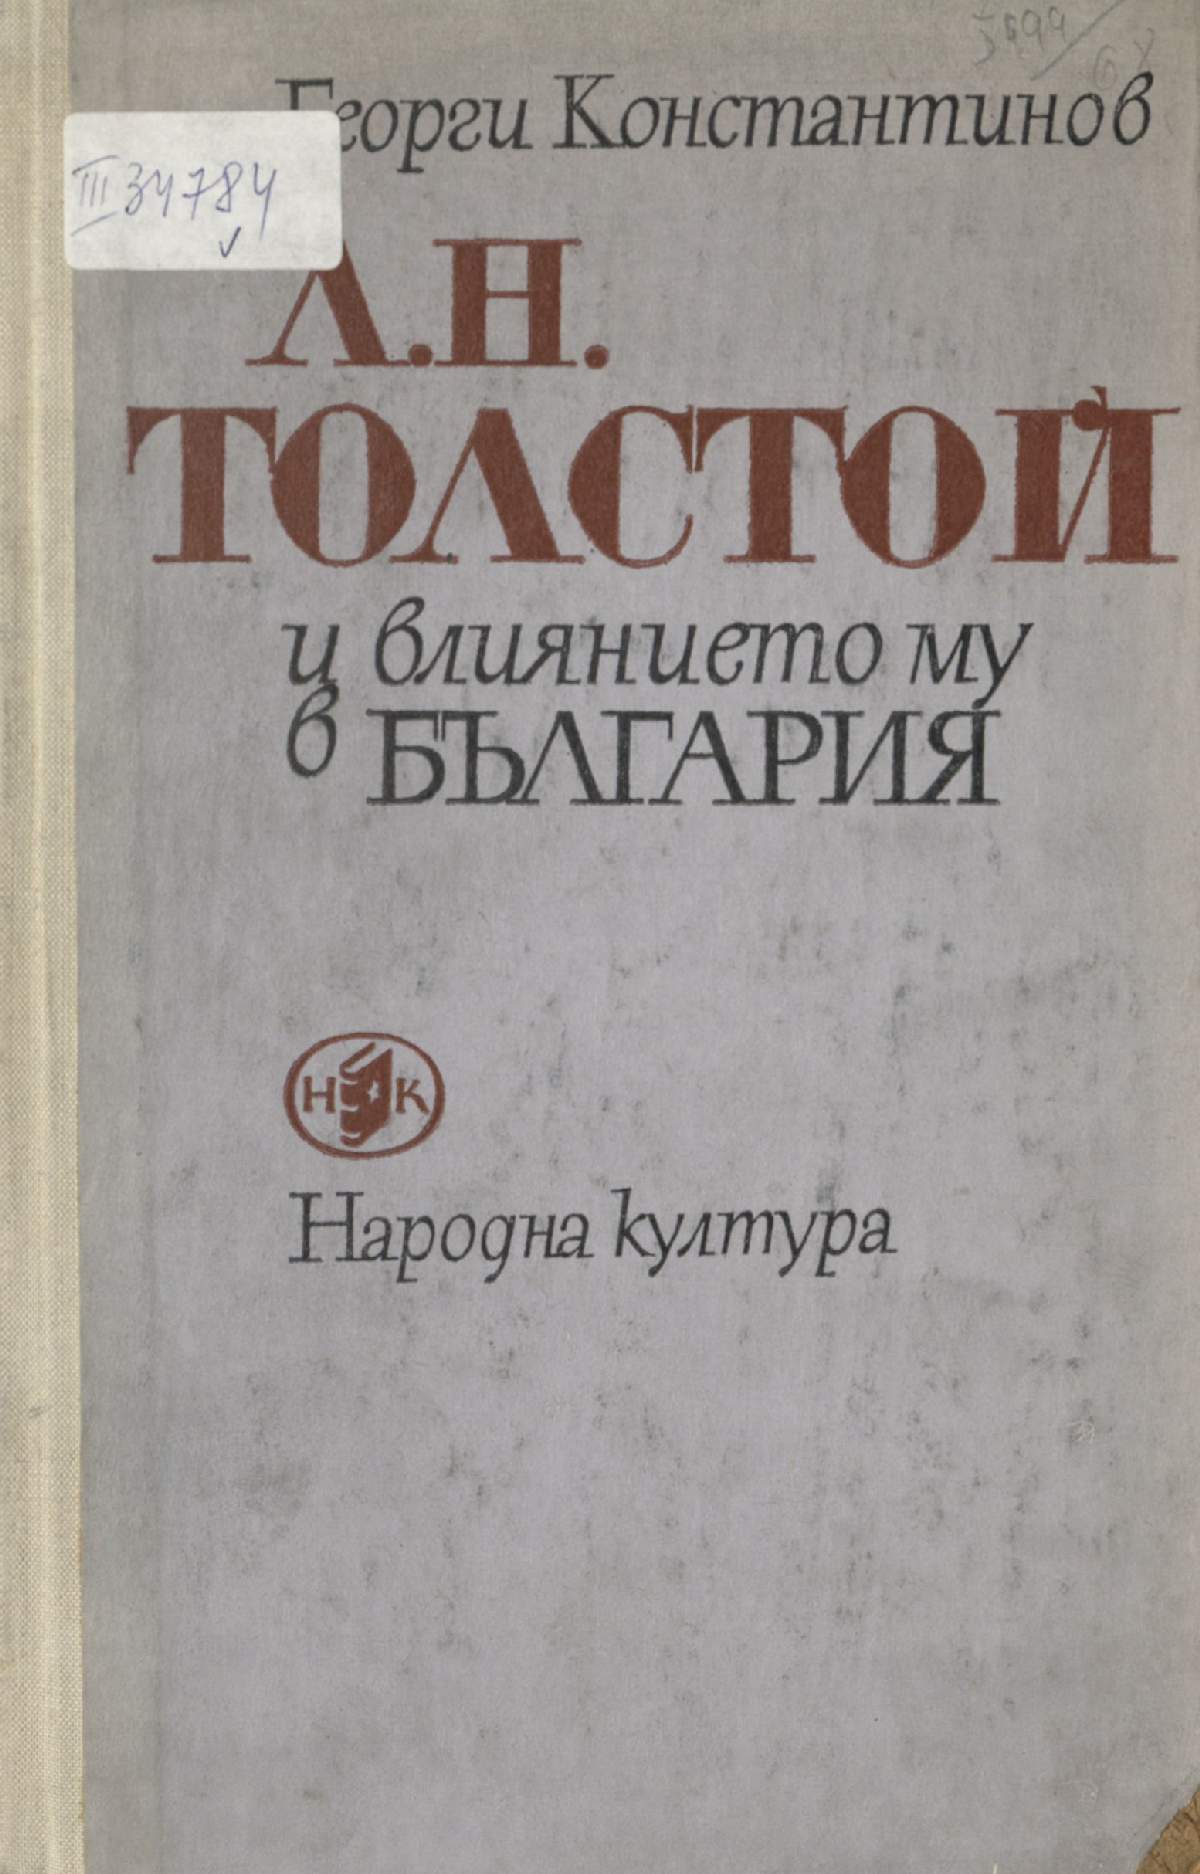 Л. Н. Толстой и влиянието му в България